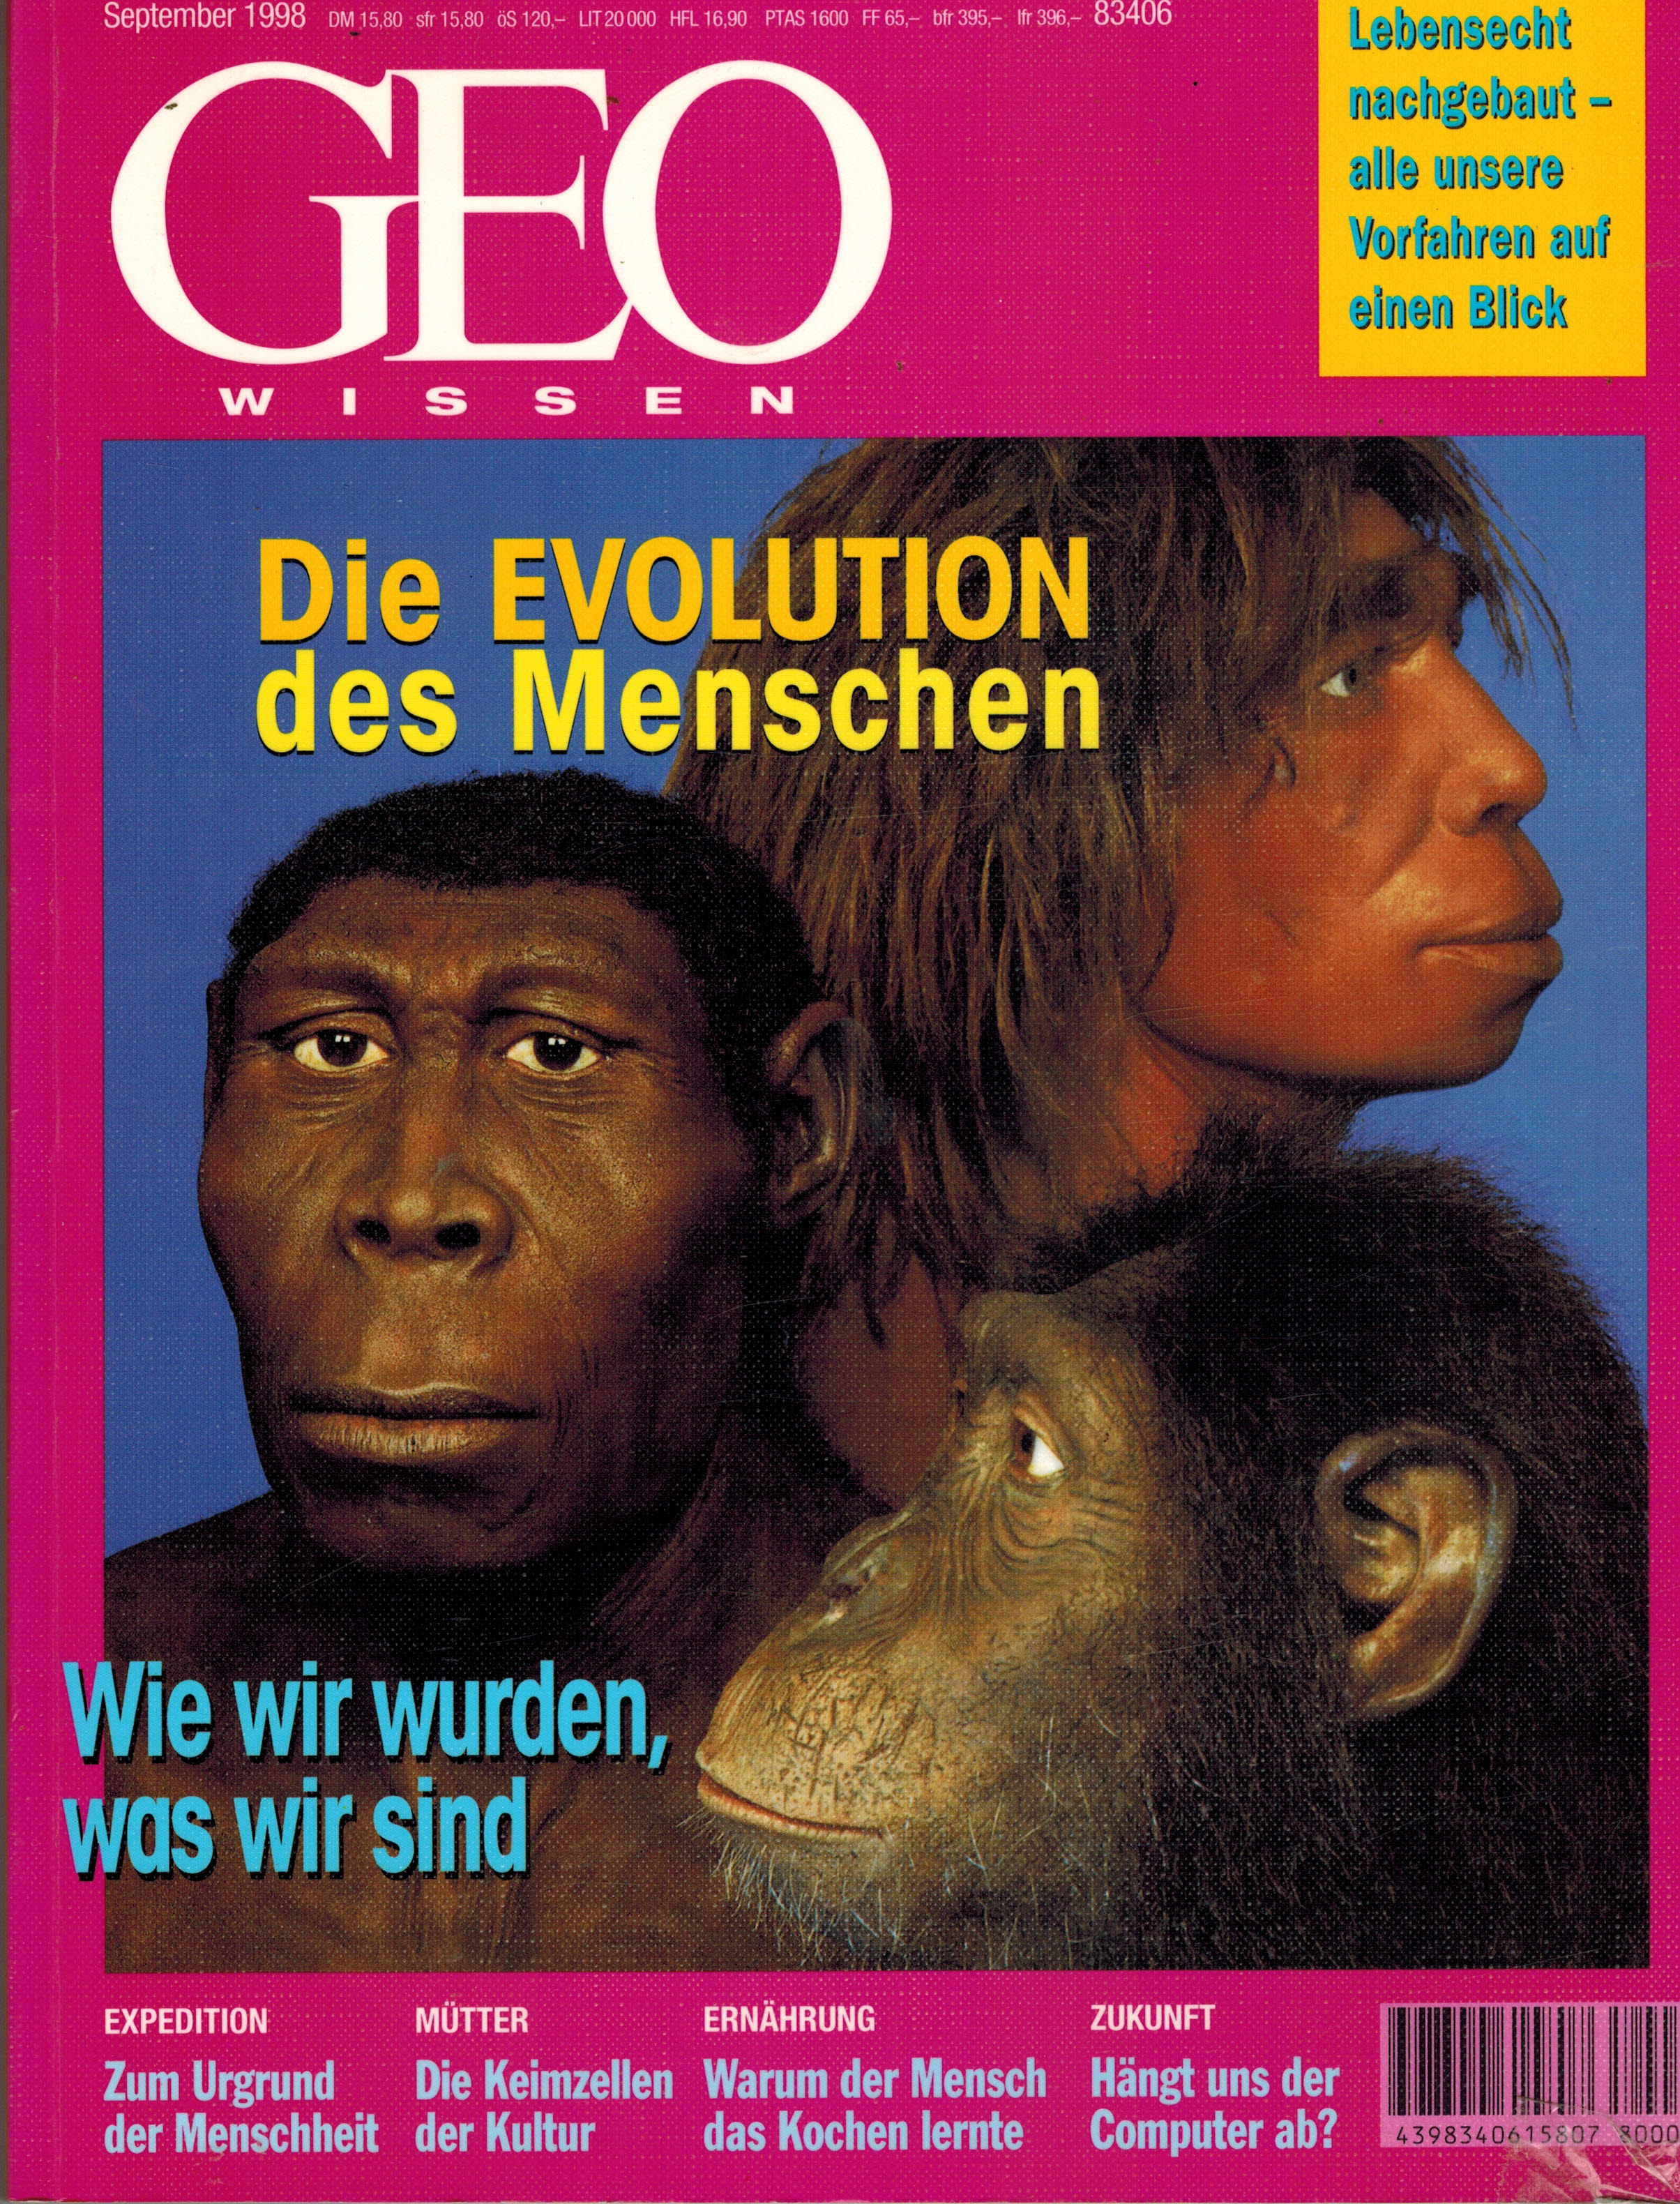 GEO WissenSeptember 1998Die Evolution des Menschen